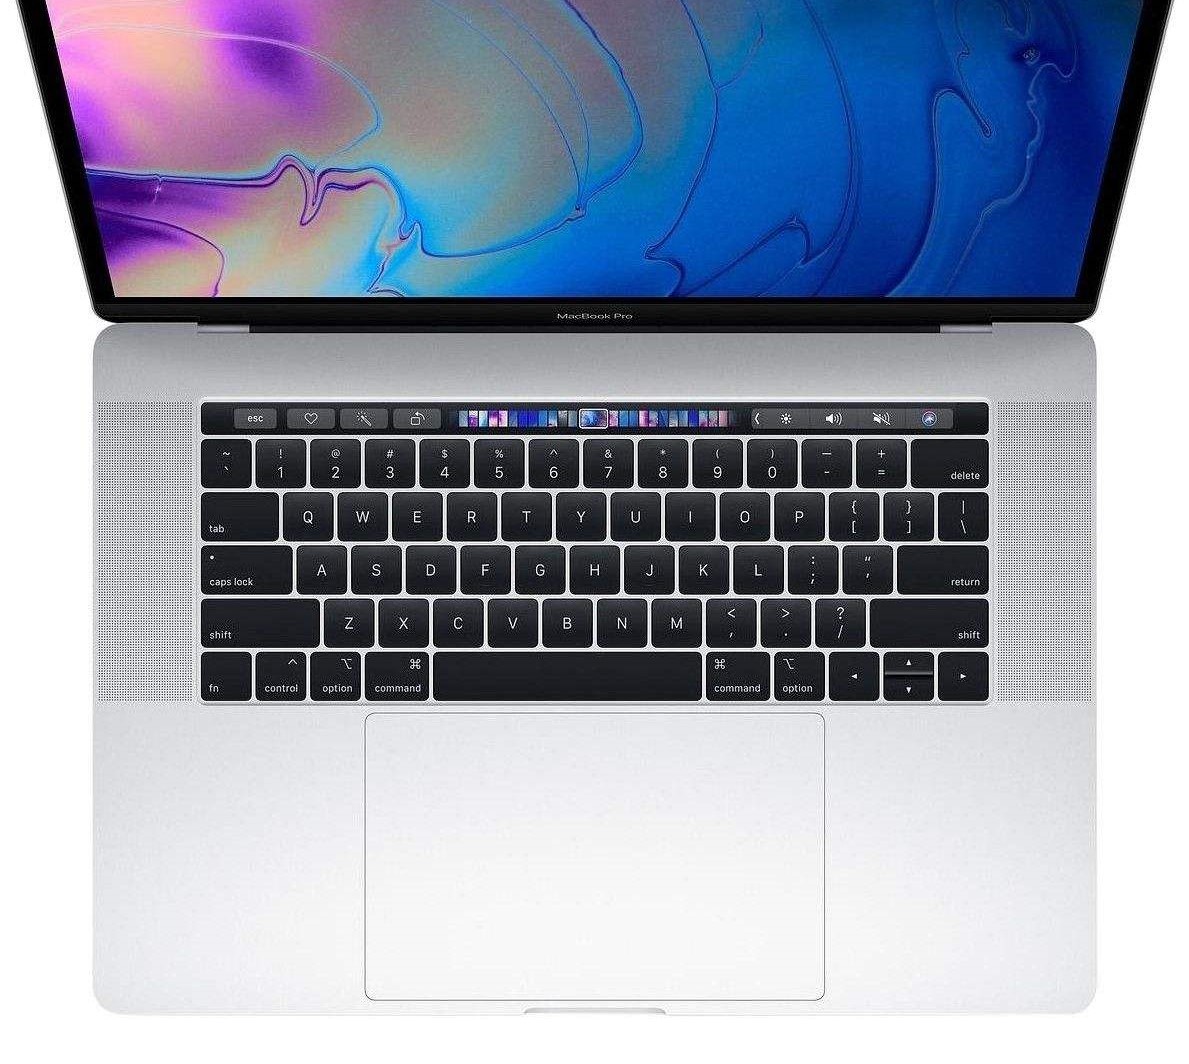 لپ تاپ 15 اینچی اپل مدل MacBook Pro MV932 2019 همراه با تاچ بار